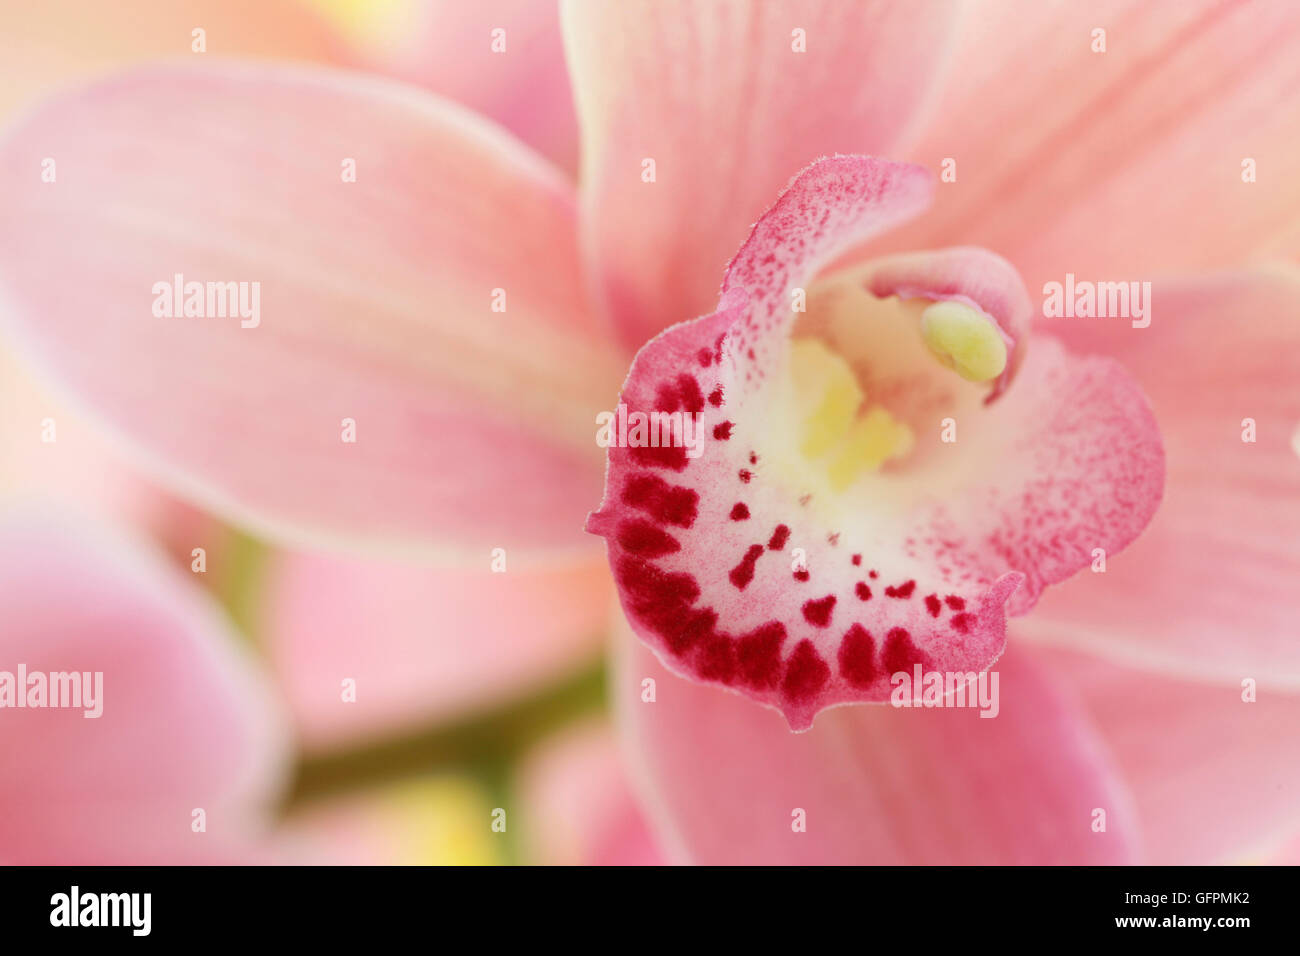 Rosa Cymbidium Orchidee sehr dekorative Blume Spitzen - freudige Energie Jane Ann Butler Fotografie JABP1505 Stockfoto